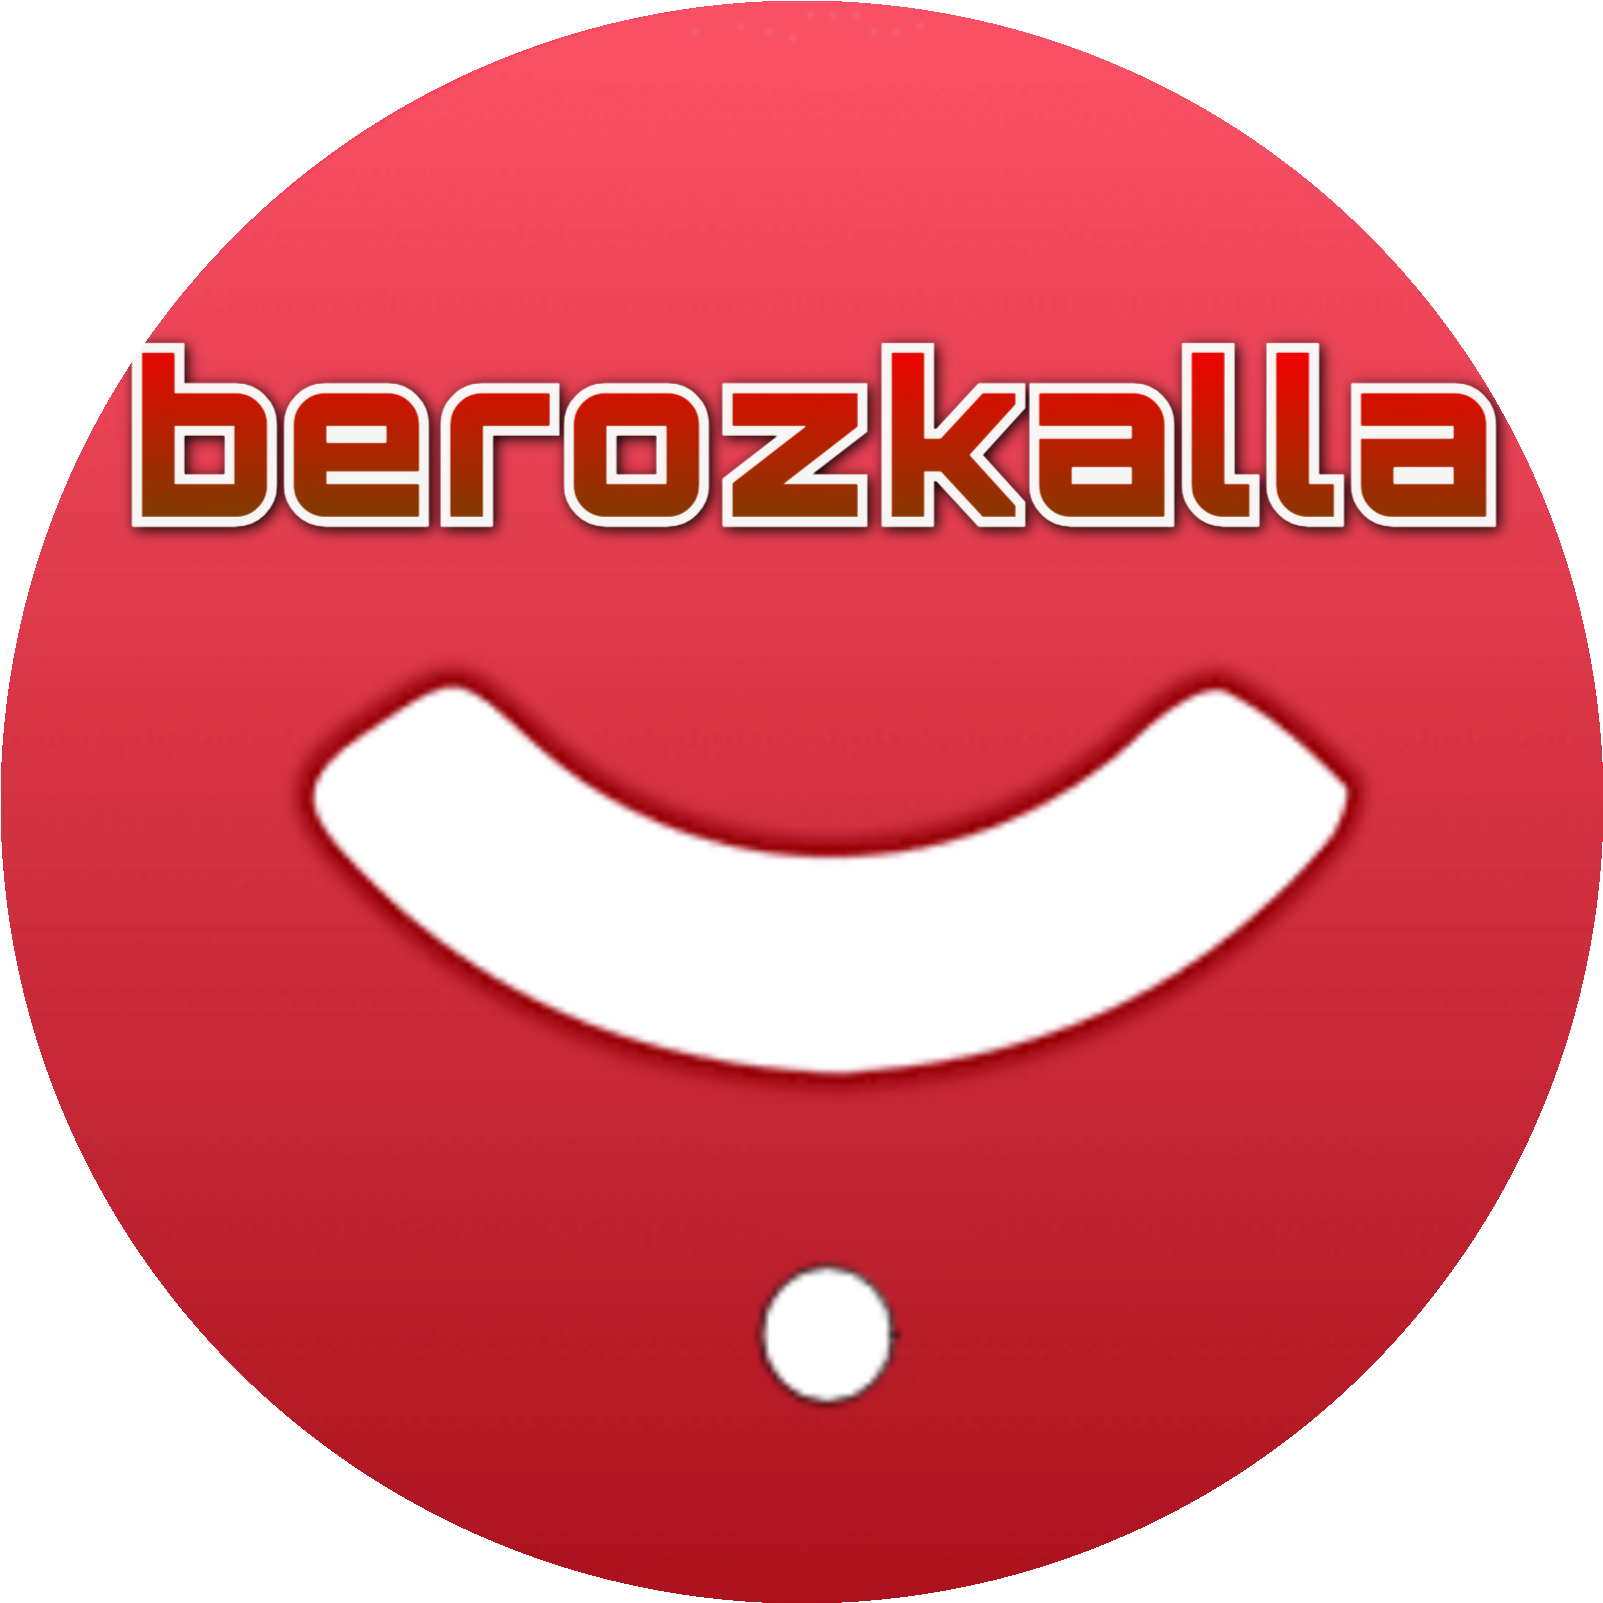 Berozkalla